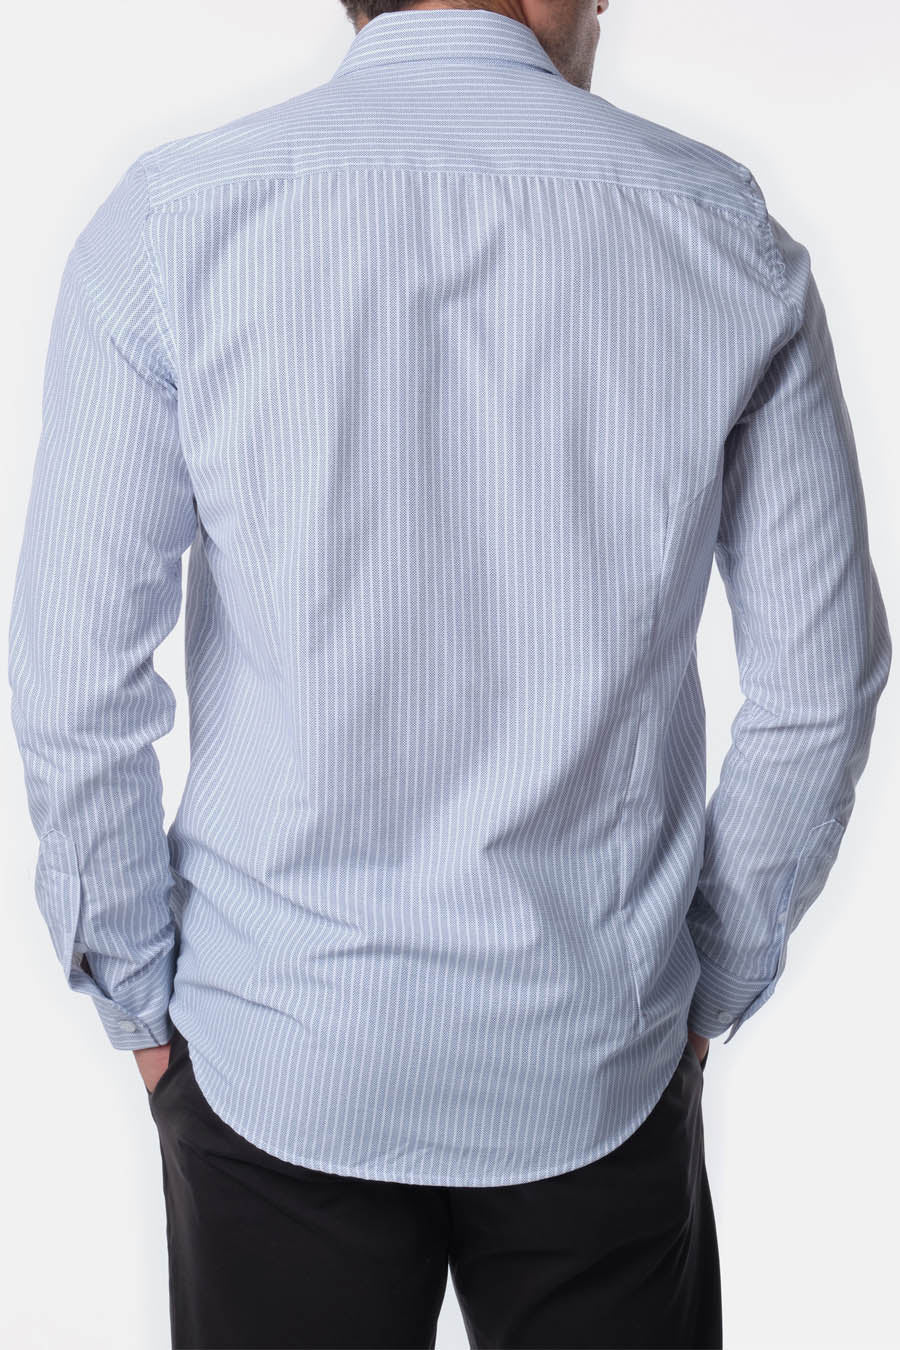 Ανδρικό πουκάμισο Keon, Λευκό/Μπλε 4